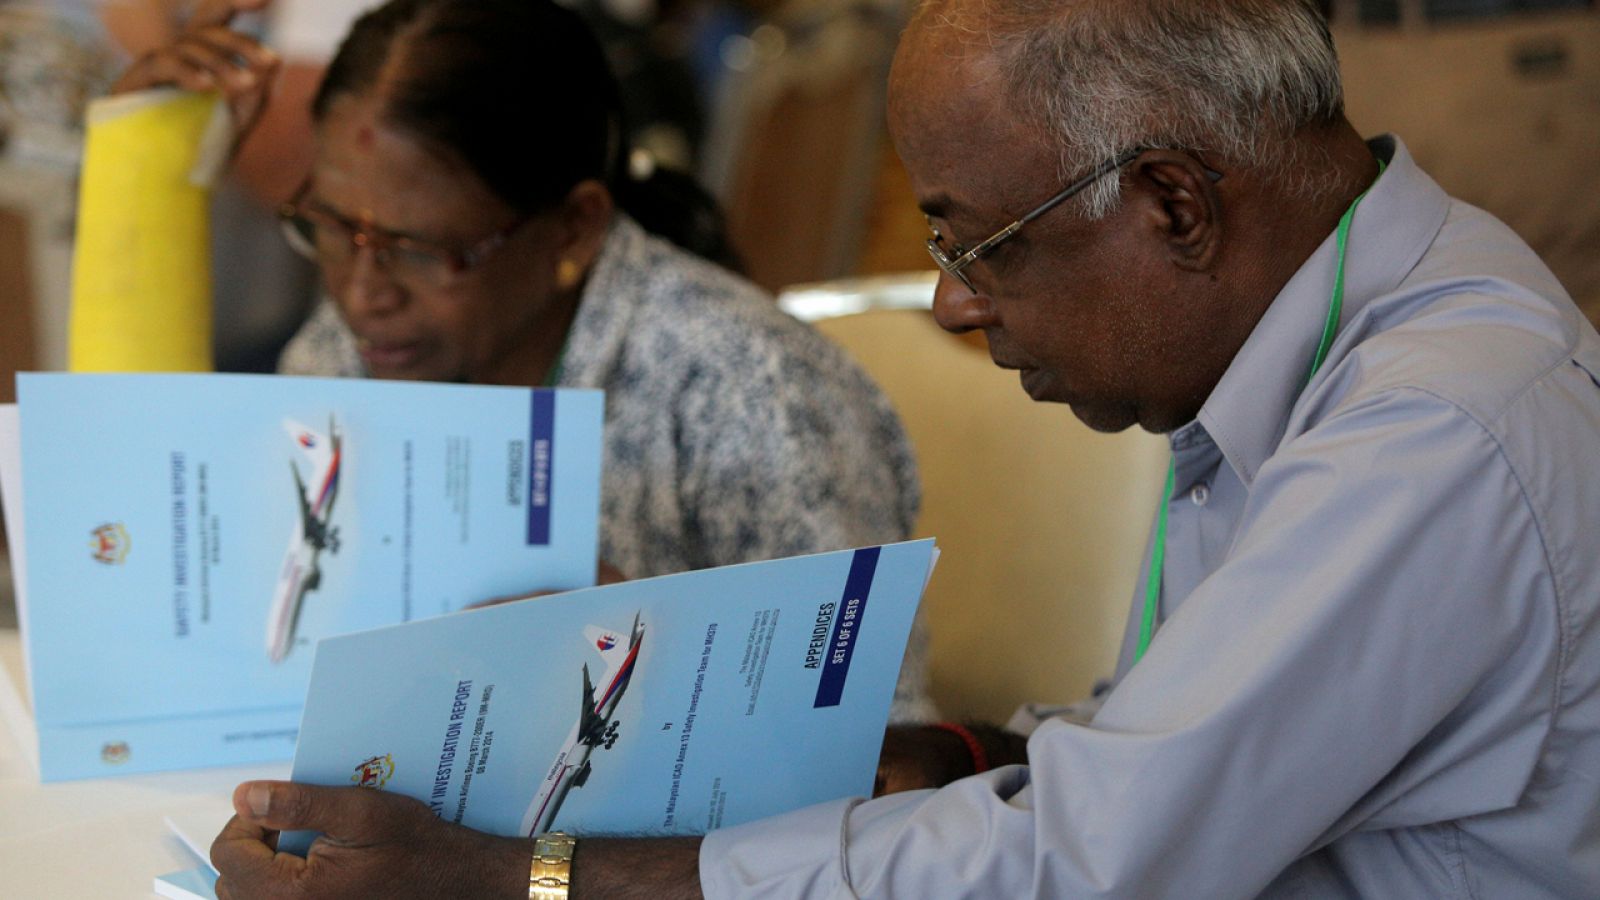 Familiares de los desaparecidos en el MH370 leen el informe sobre la investigación